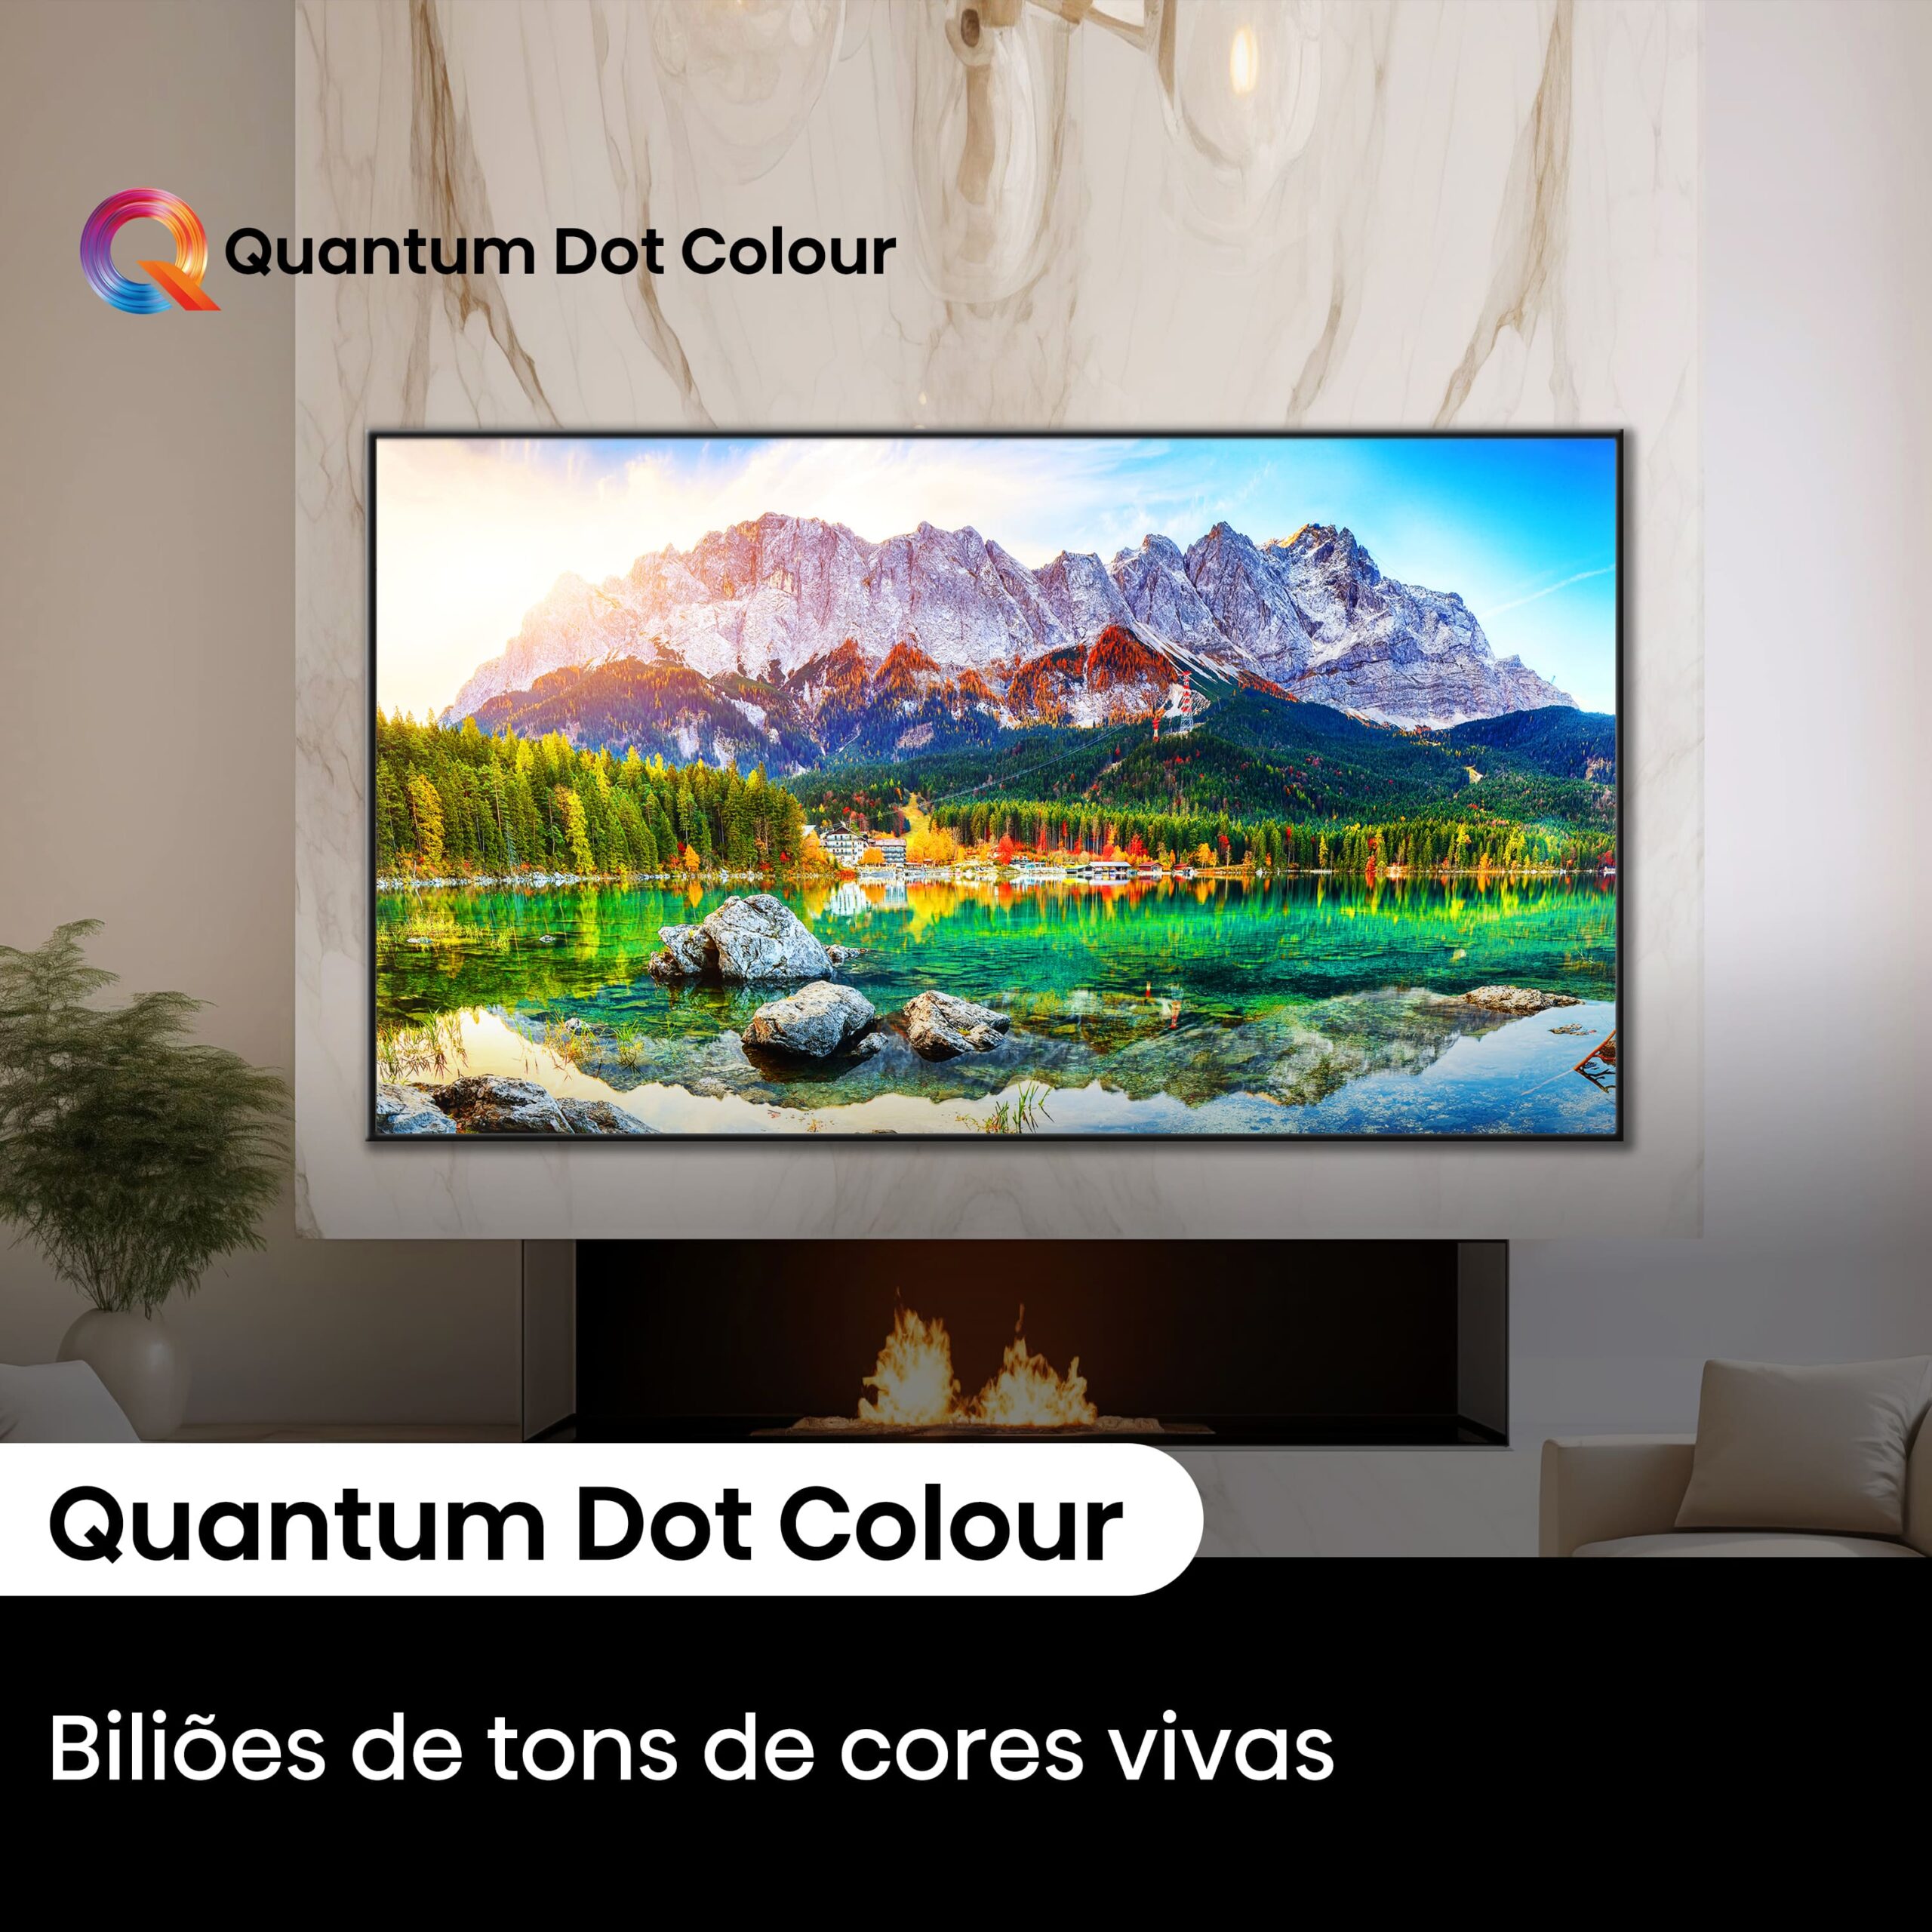 Hisense - Mini-LED TV 75U7NQ, Quantum Dot Colour, Modo Jogo de 144Hz, Full Array Local Dimming